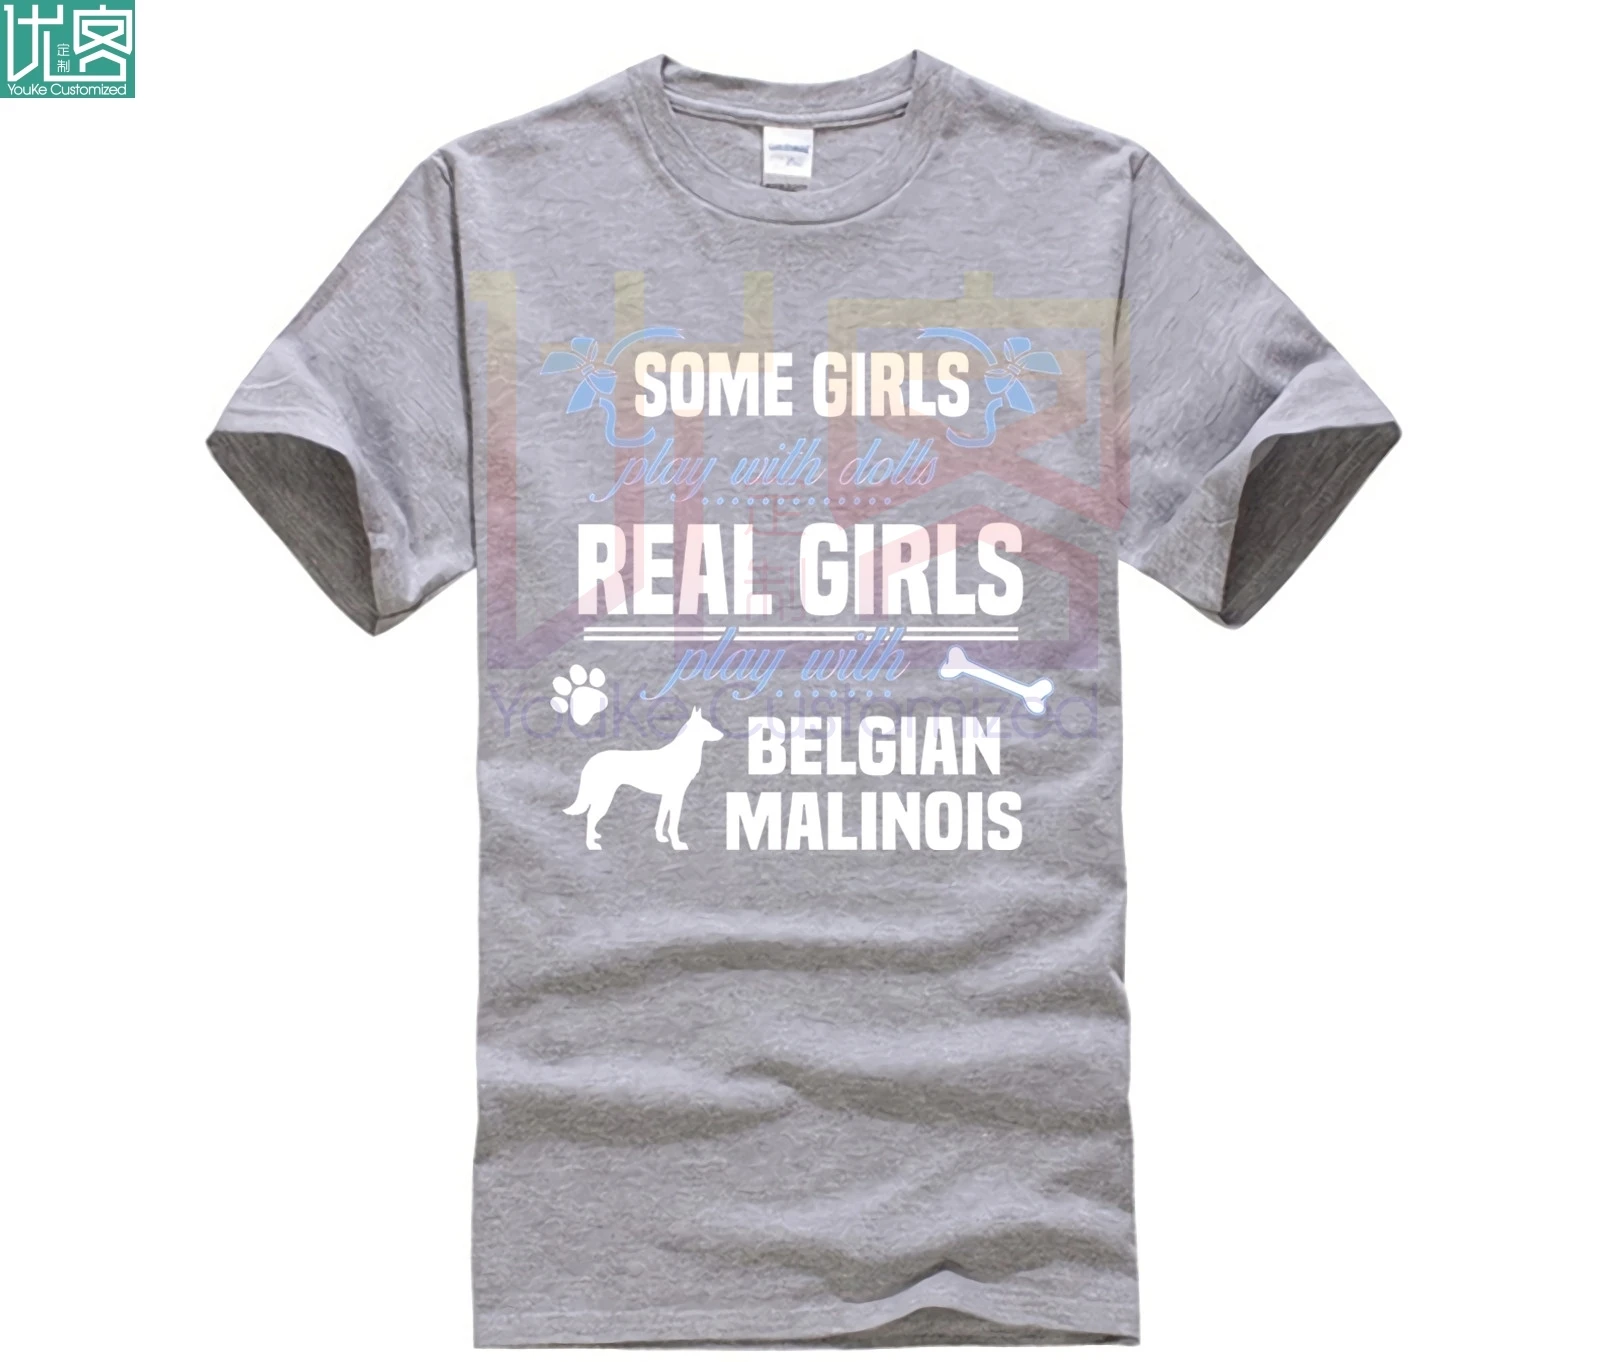 Brugerdefinerede trykt bomuld O-neck T-shirt Belgiske Malinois T-shirt Nogle drenge lege med dukker Real 5